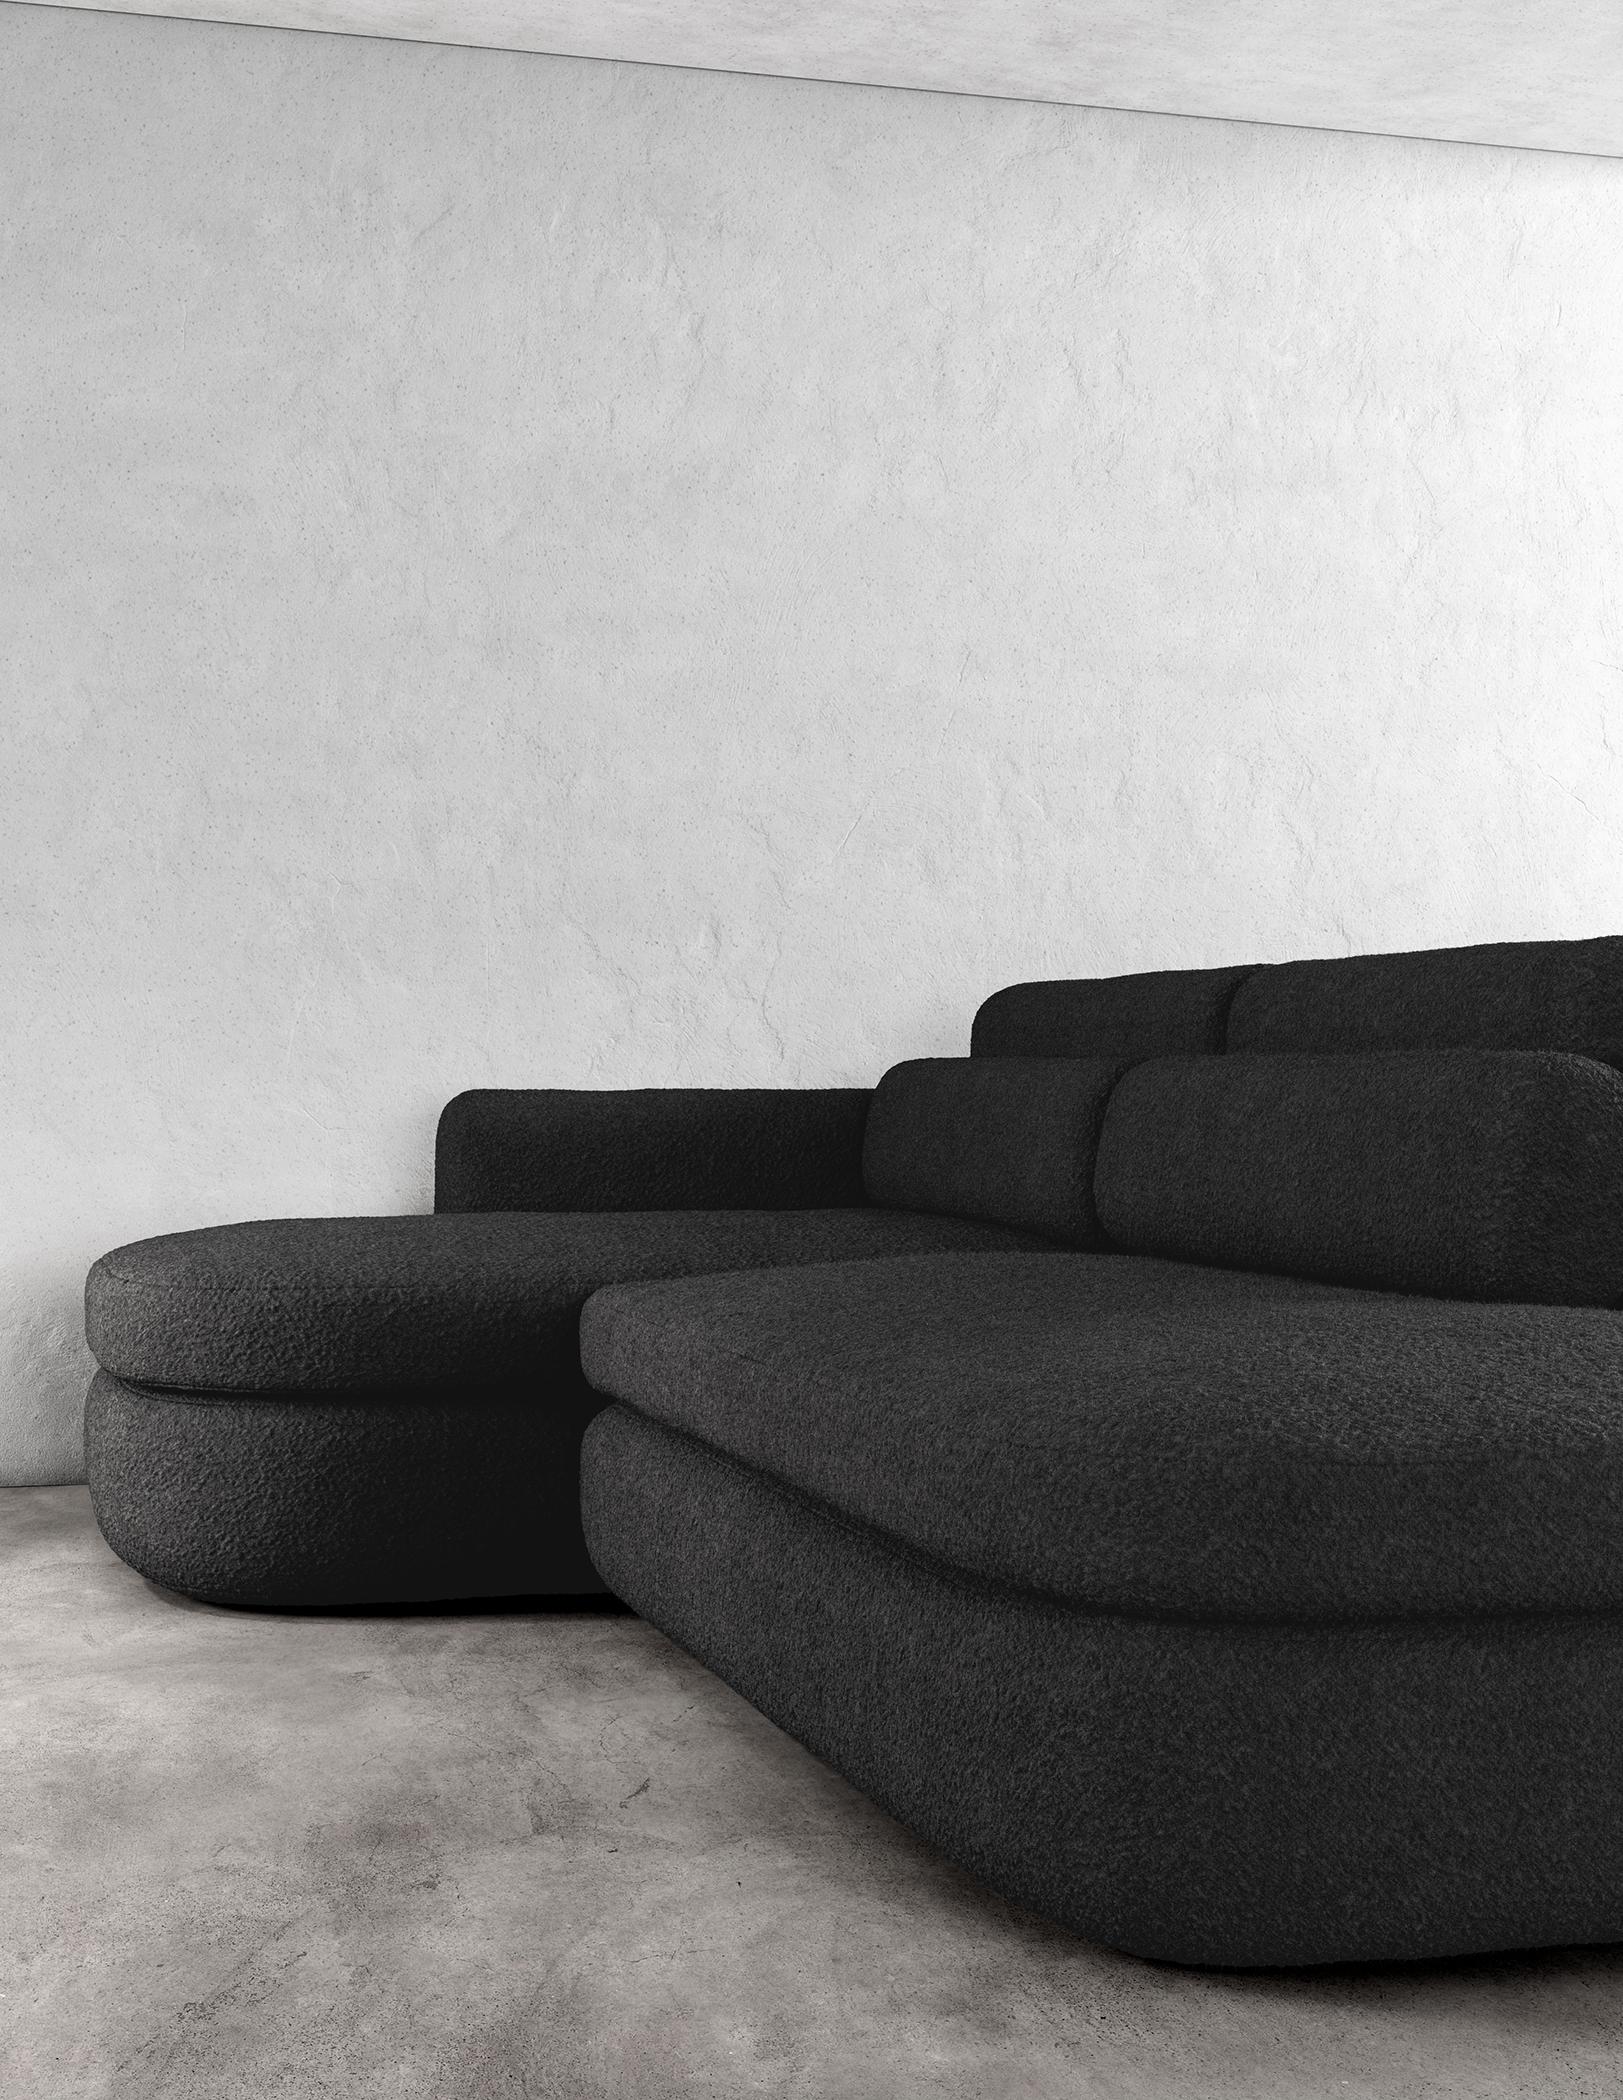 ASYM SECTIONAL – Modernes asymmetrisches Sofa aus schwarzem Bouclé

Das Asym Sektionssofa ist ein atemberaubendes Möbelstück, das sowohl raffiniert als auch schlicht ist und mit seinen asymmetrischen Designelementen eine einzigartige und moderne